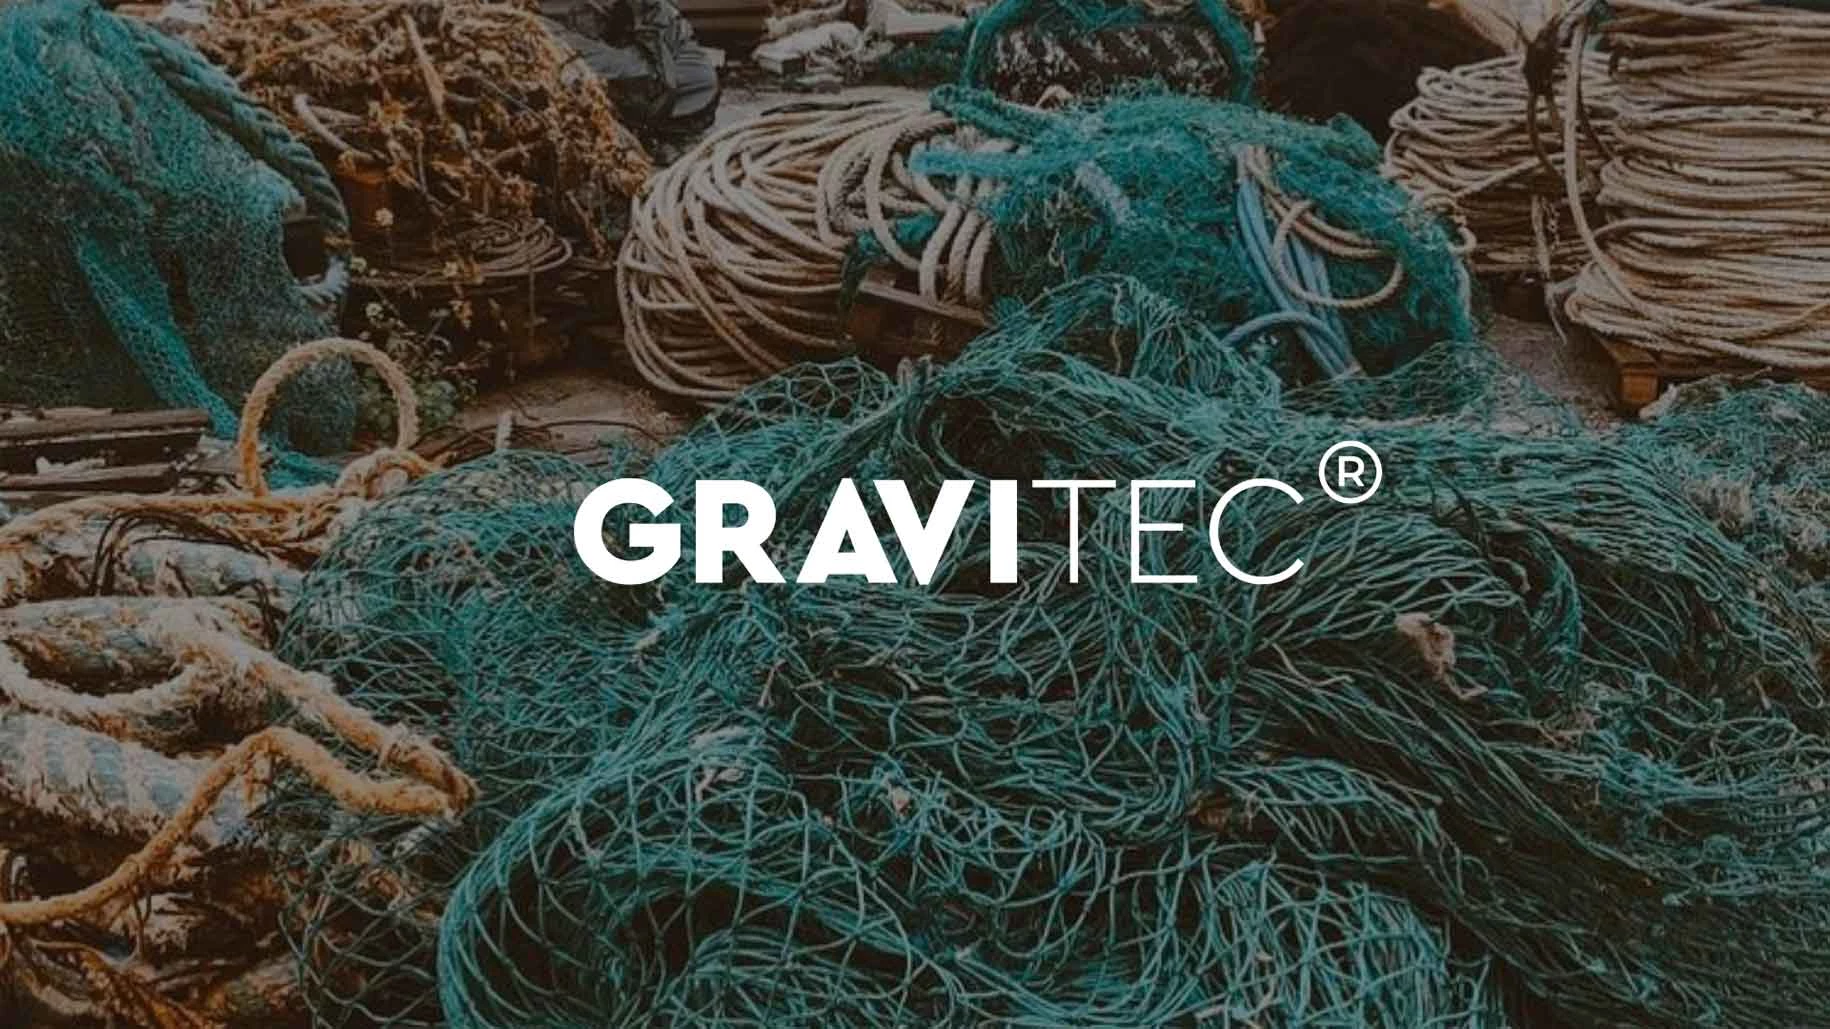 Gravitec: materiales con propósito que salen del océano para redefinir la forma de construir, amueblar y diseñar. Imágenes: cortesía The Gravity Wave